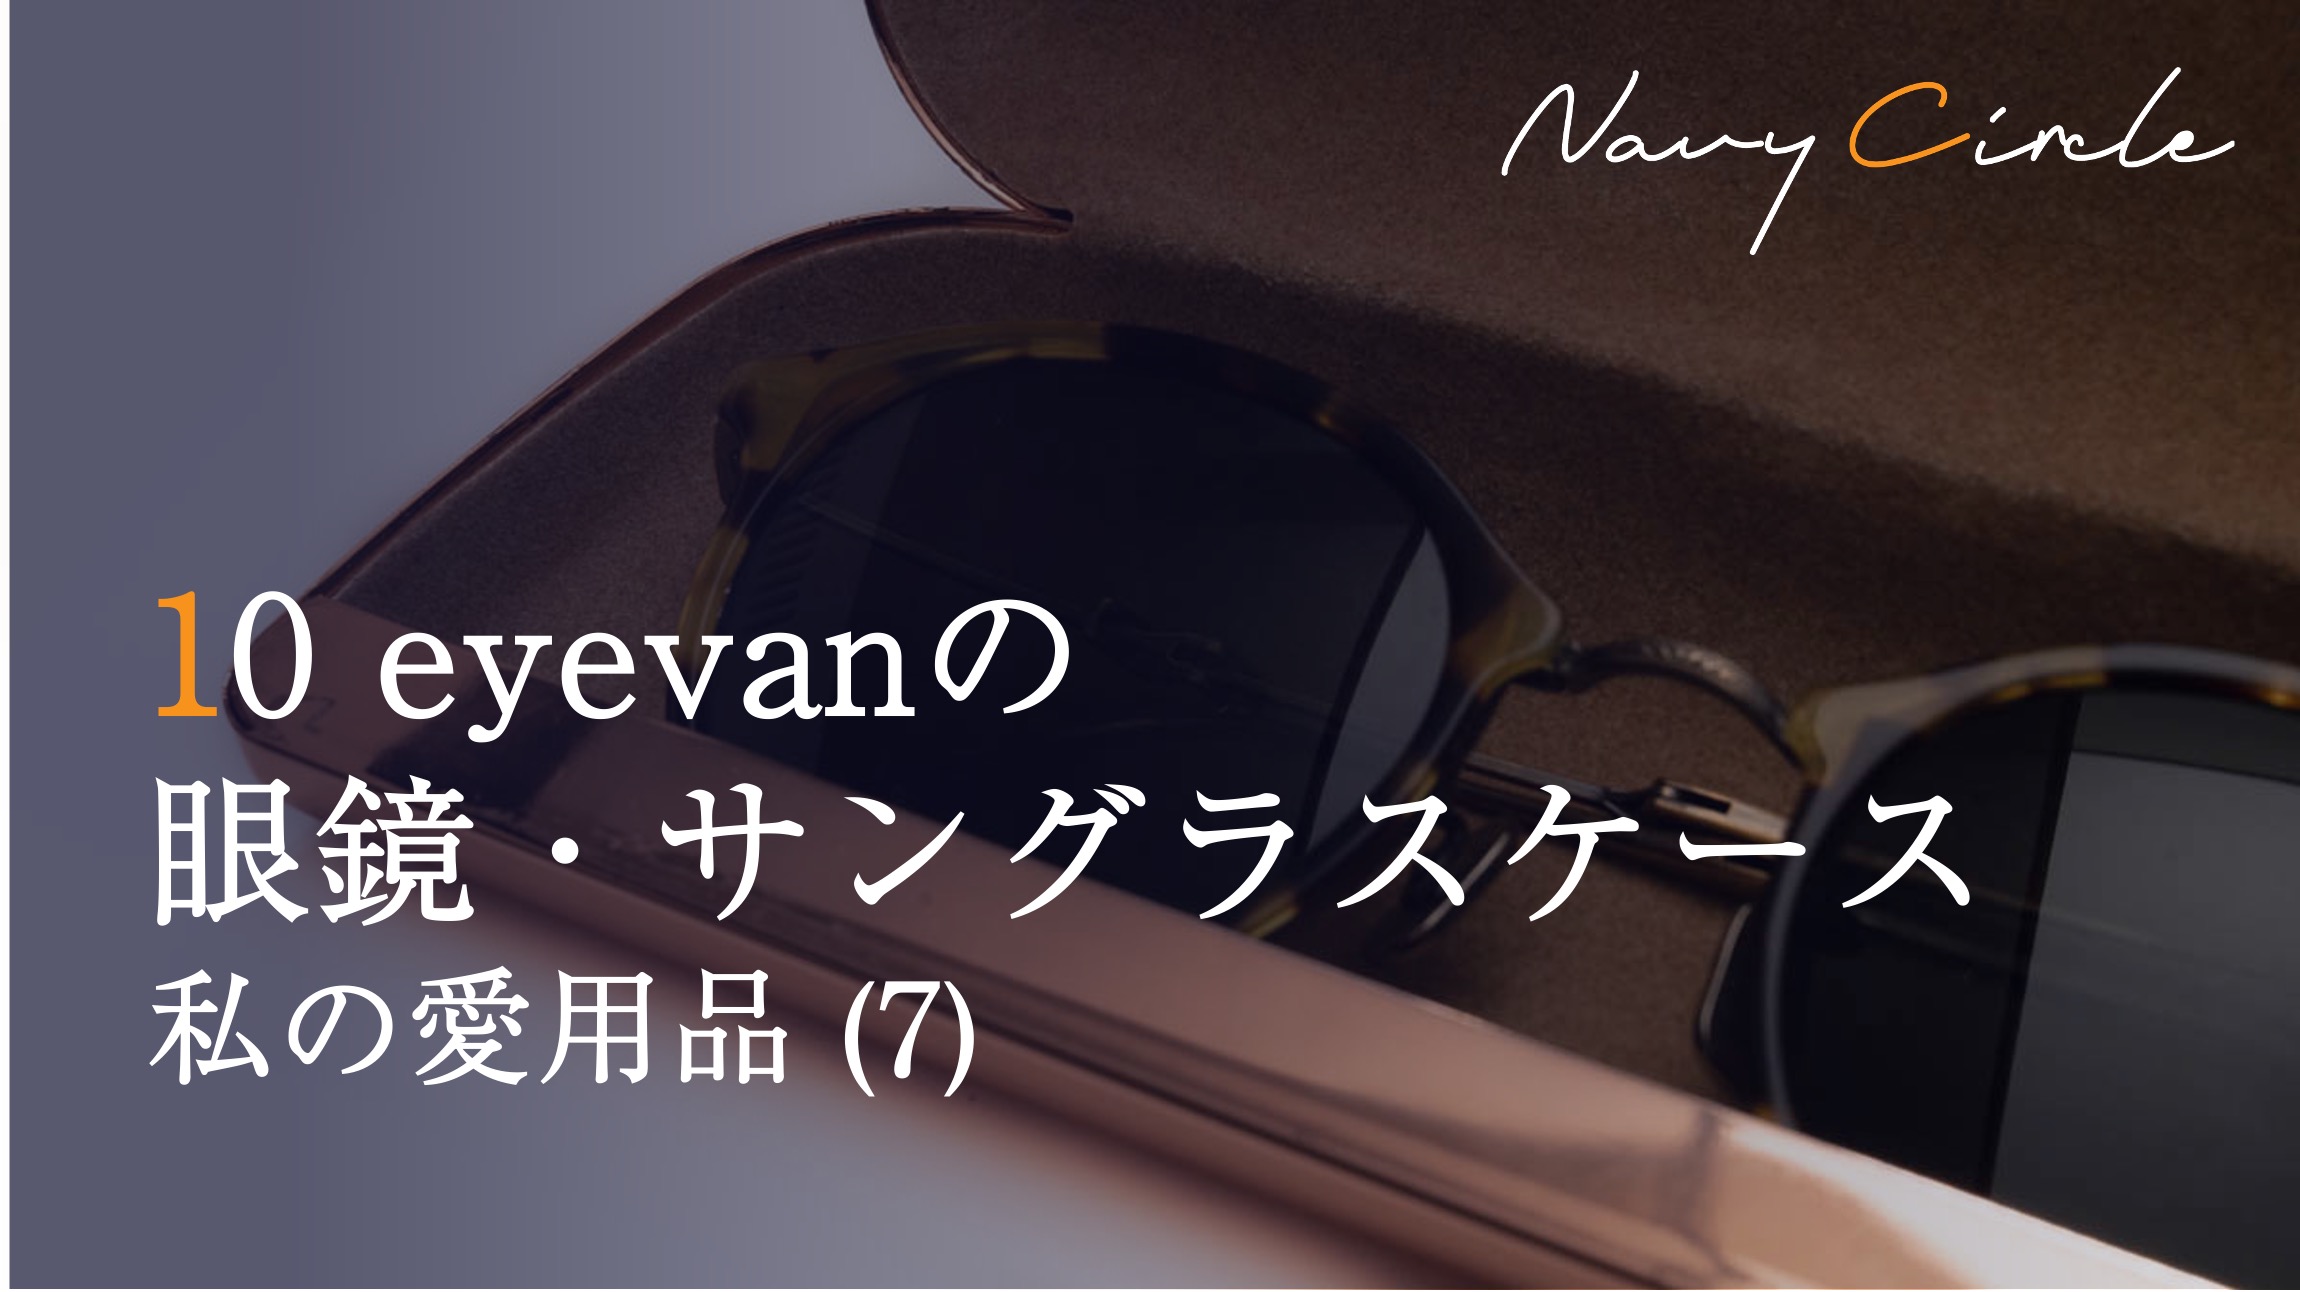 私の愛用品 (7) 10 eyevanの眼鏡・サングラスケース | Eyewear case by 10 eyevan